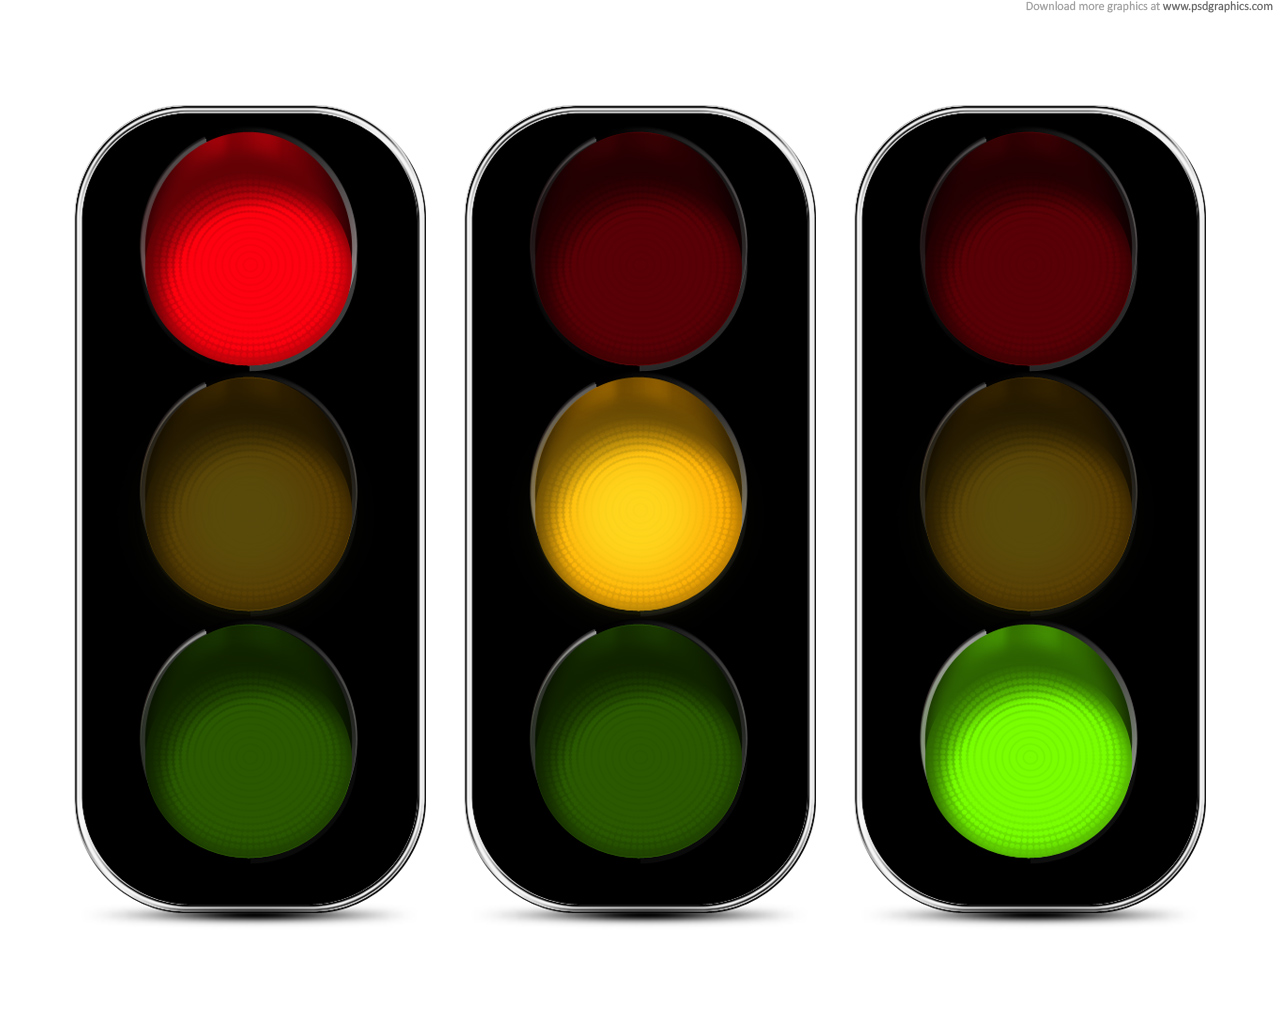 Green Traffic Lights - ClipArt Best